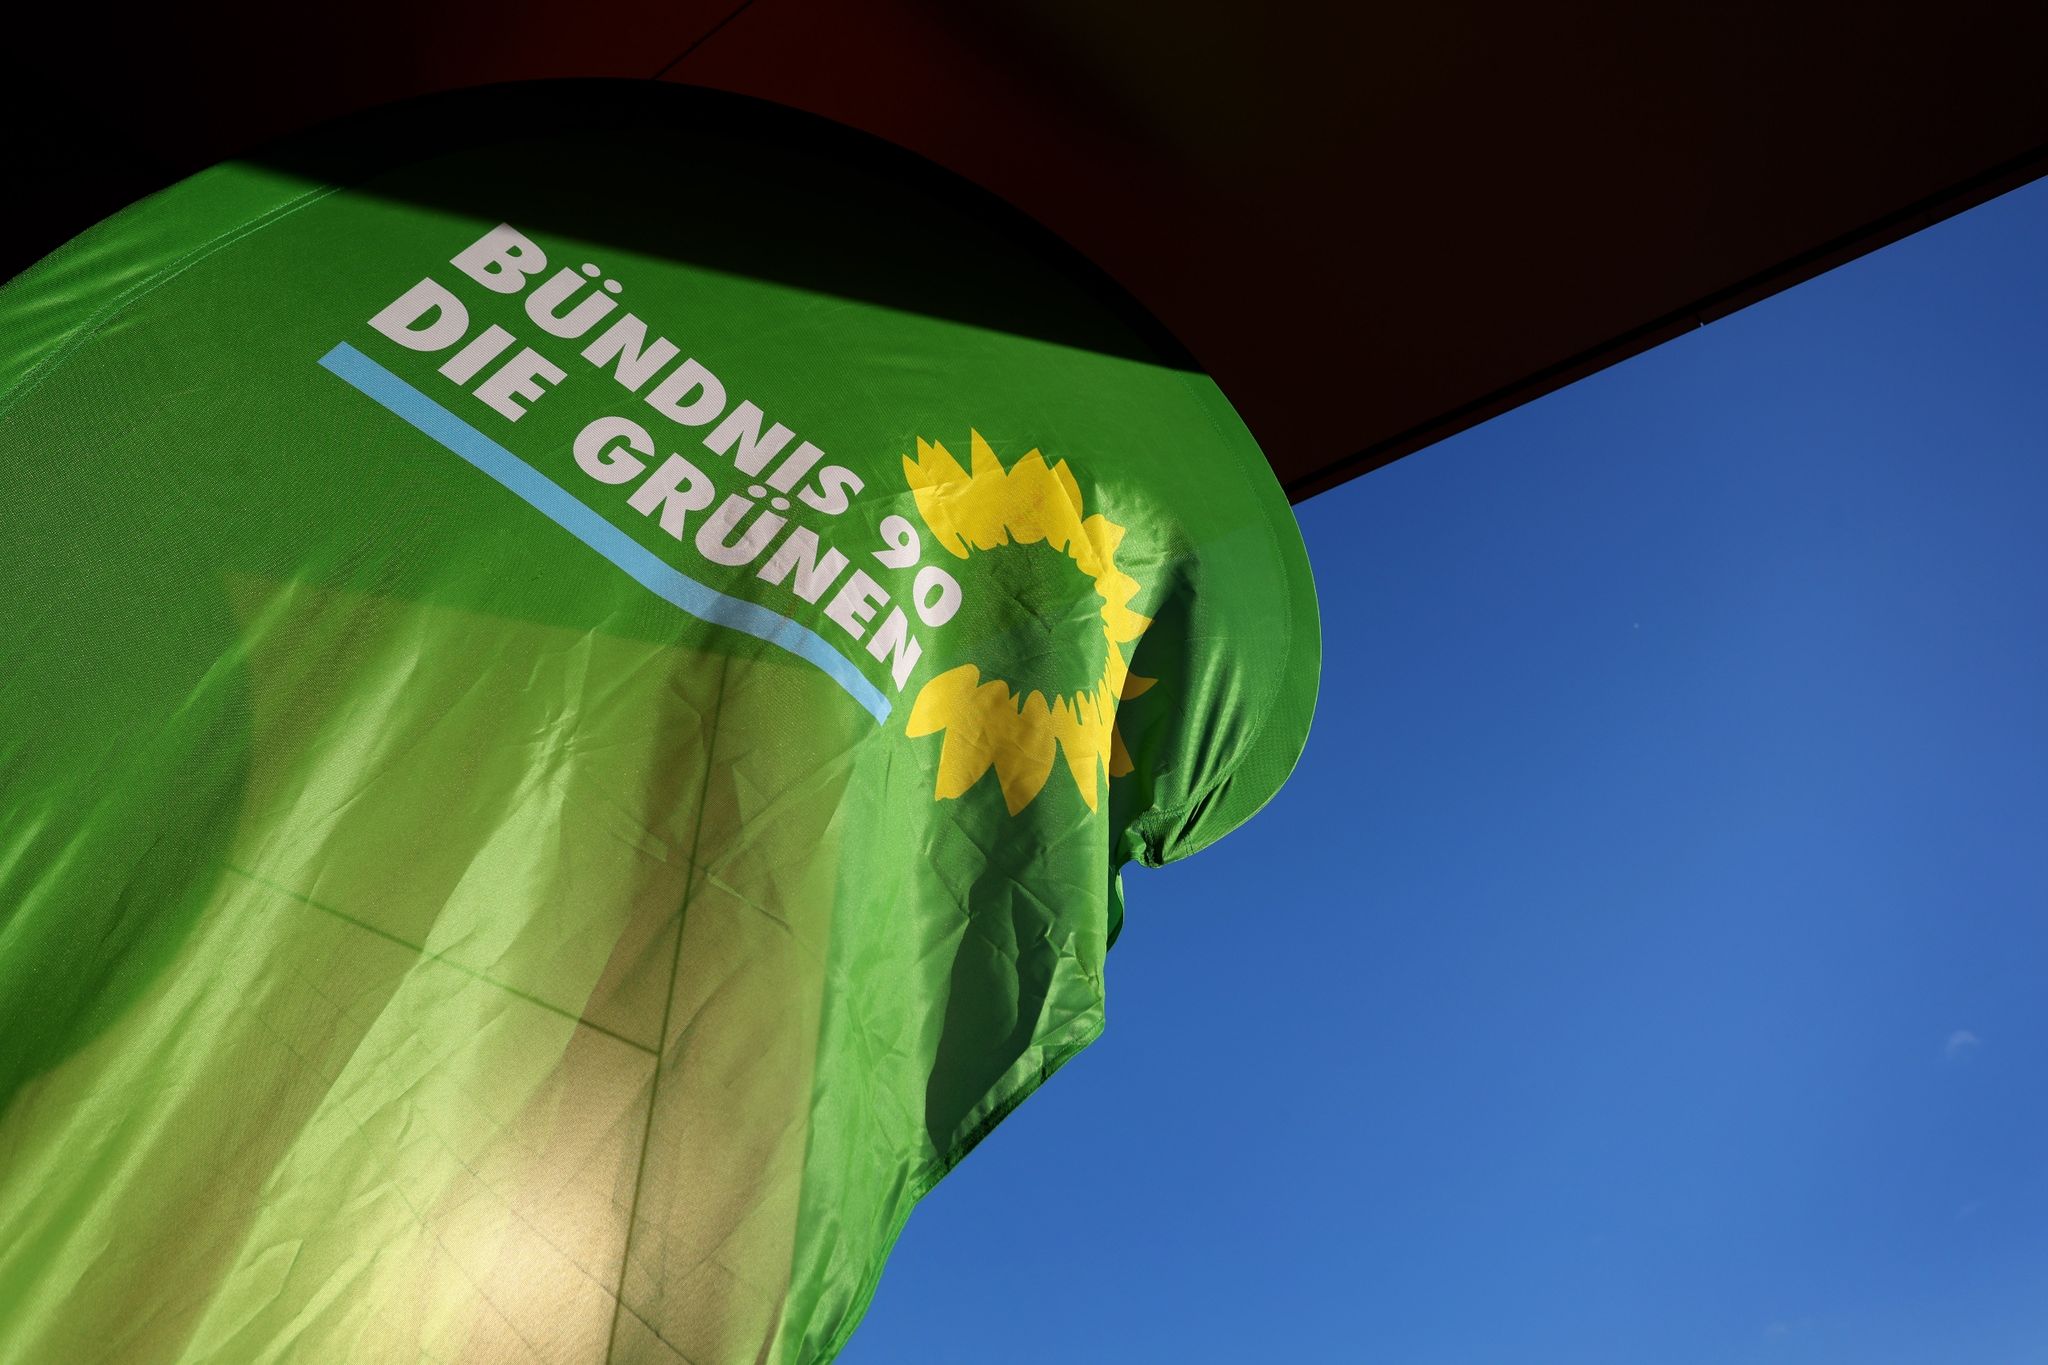 Die Grünen haben zu Jahresbeginn eine Eintrittswelle verzeichnet.